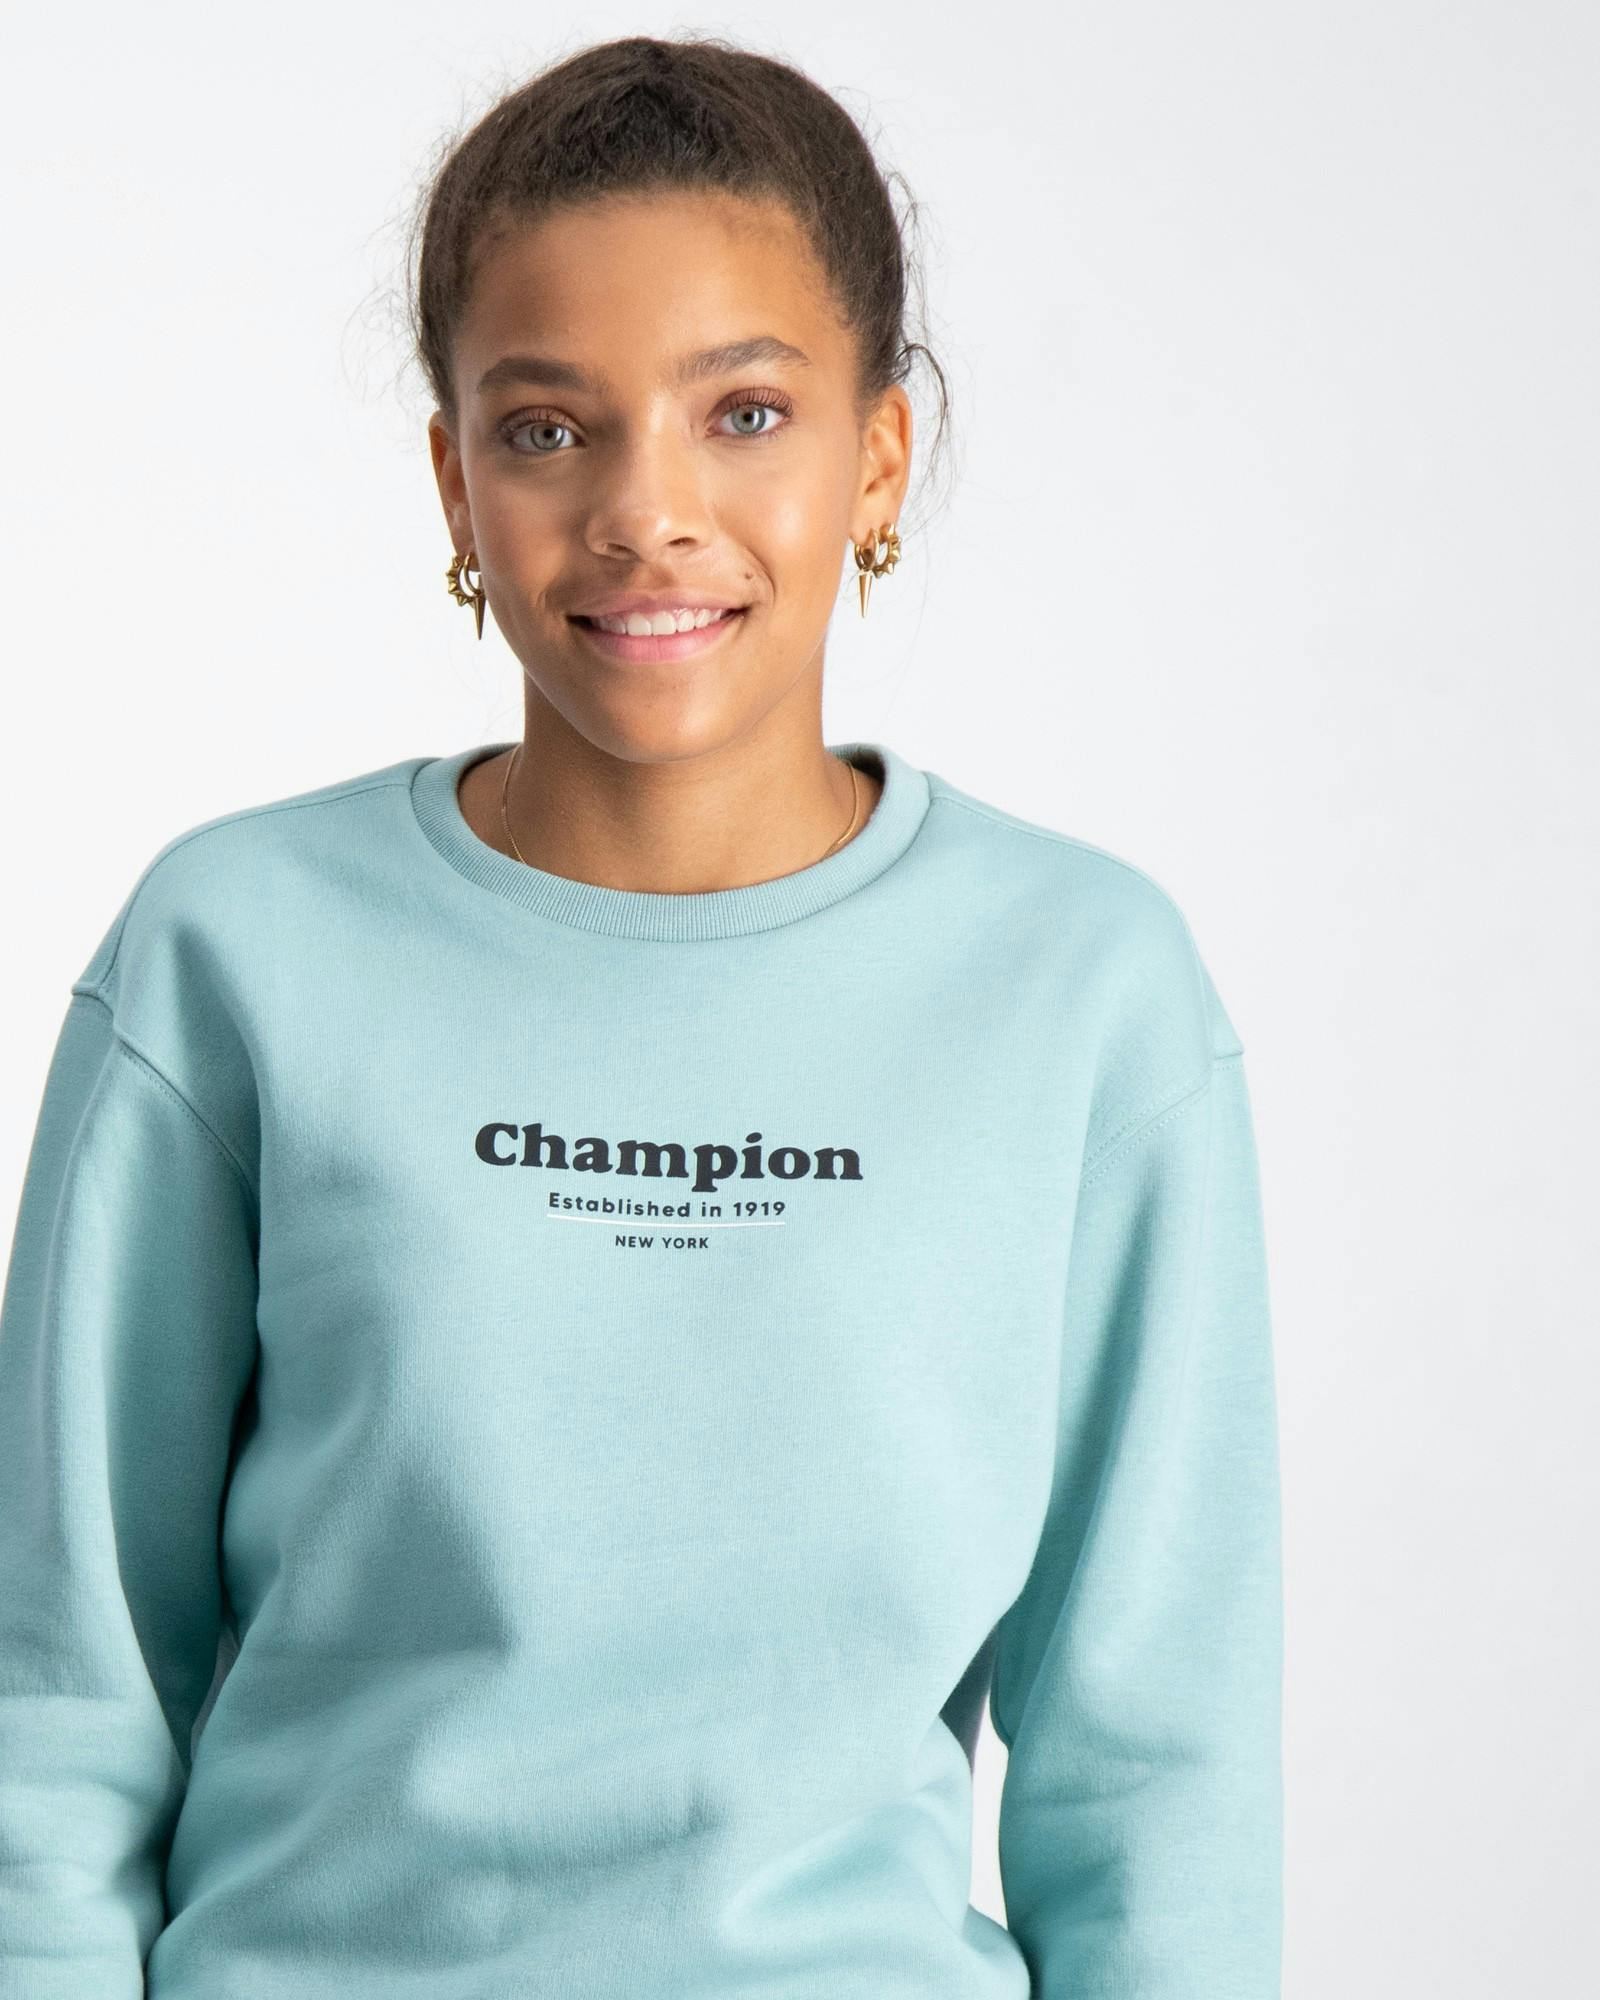 Champion Pullover für Kinder und Jugendliche | Kids Brand Store